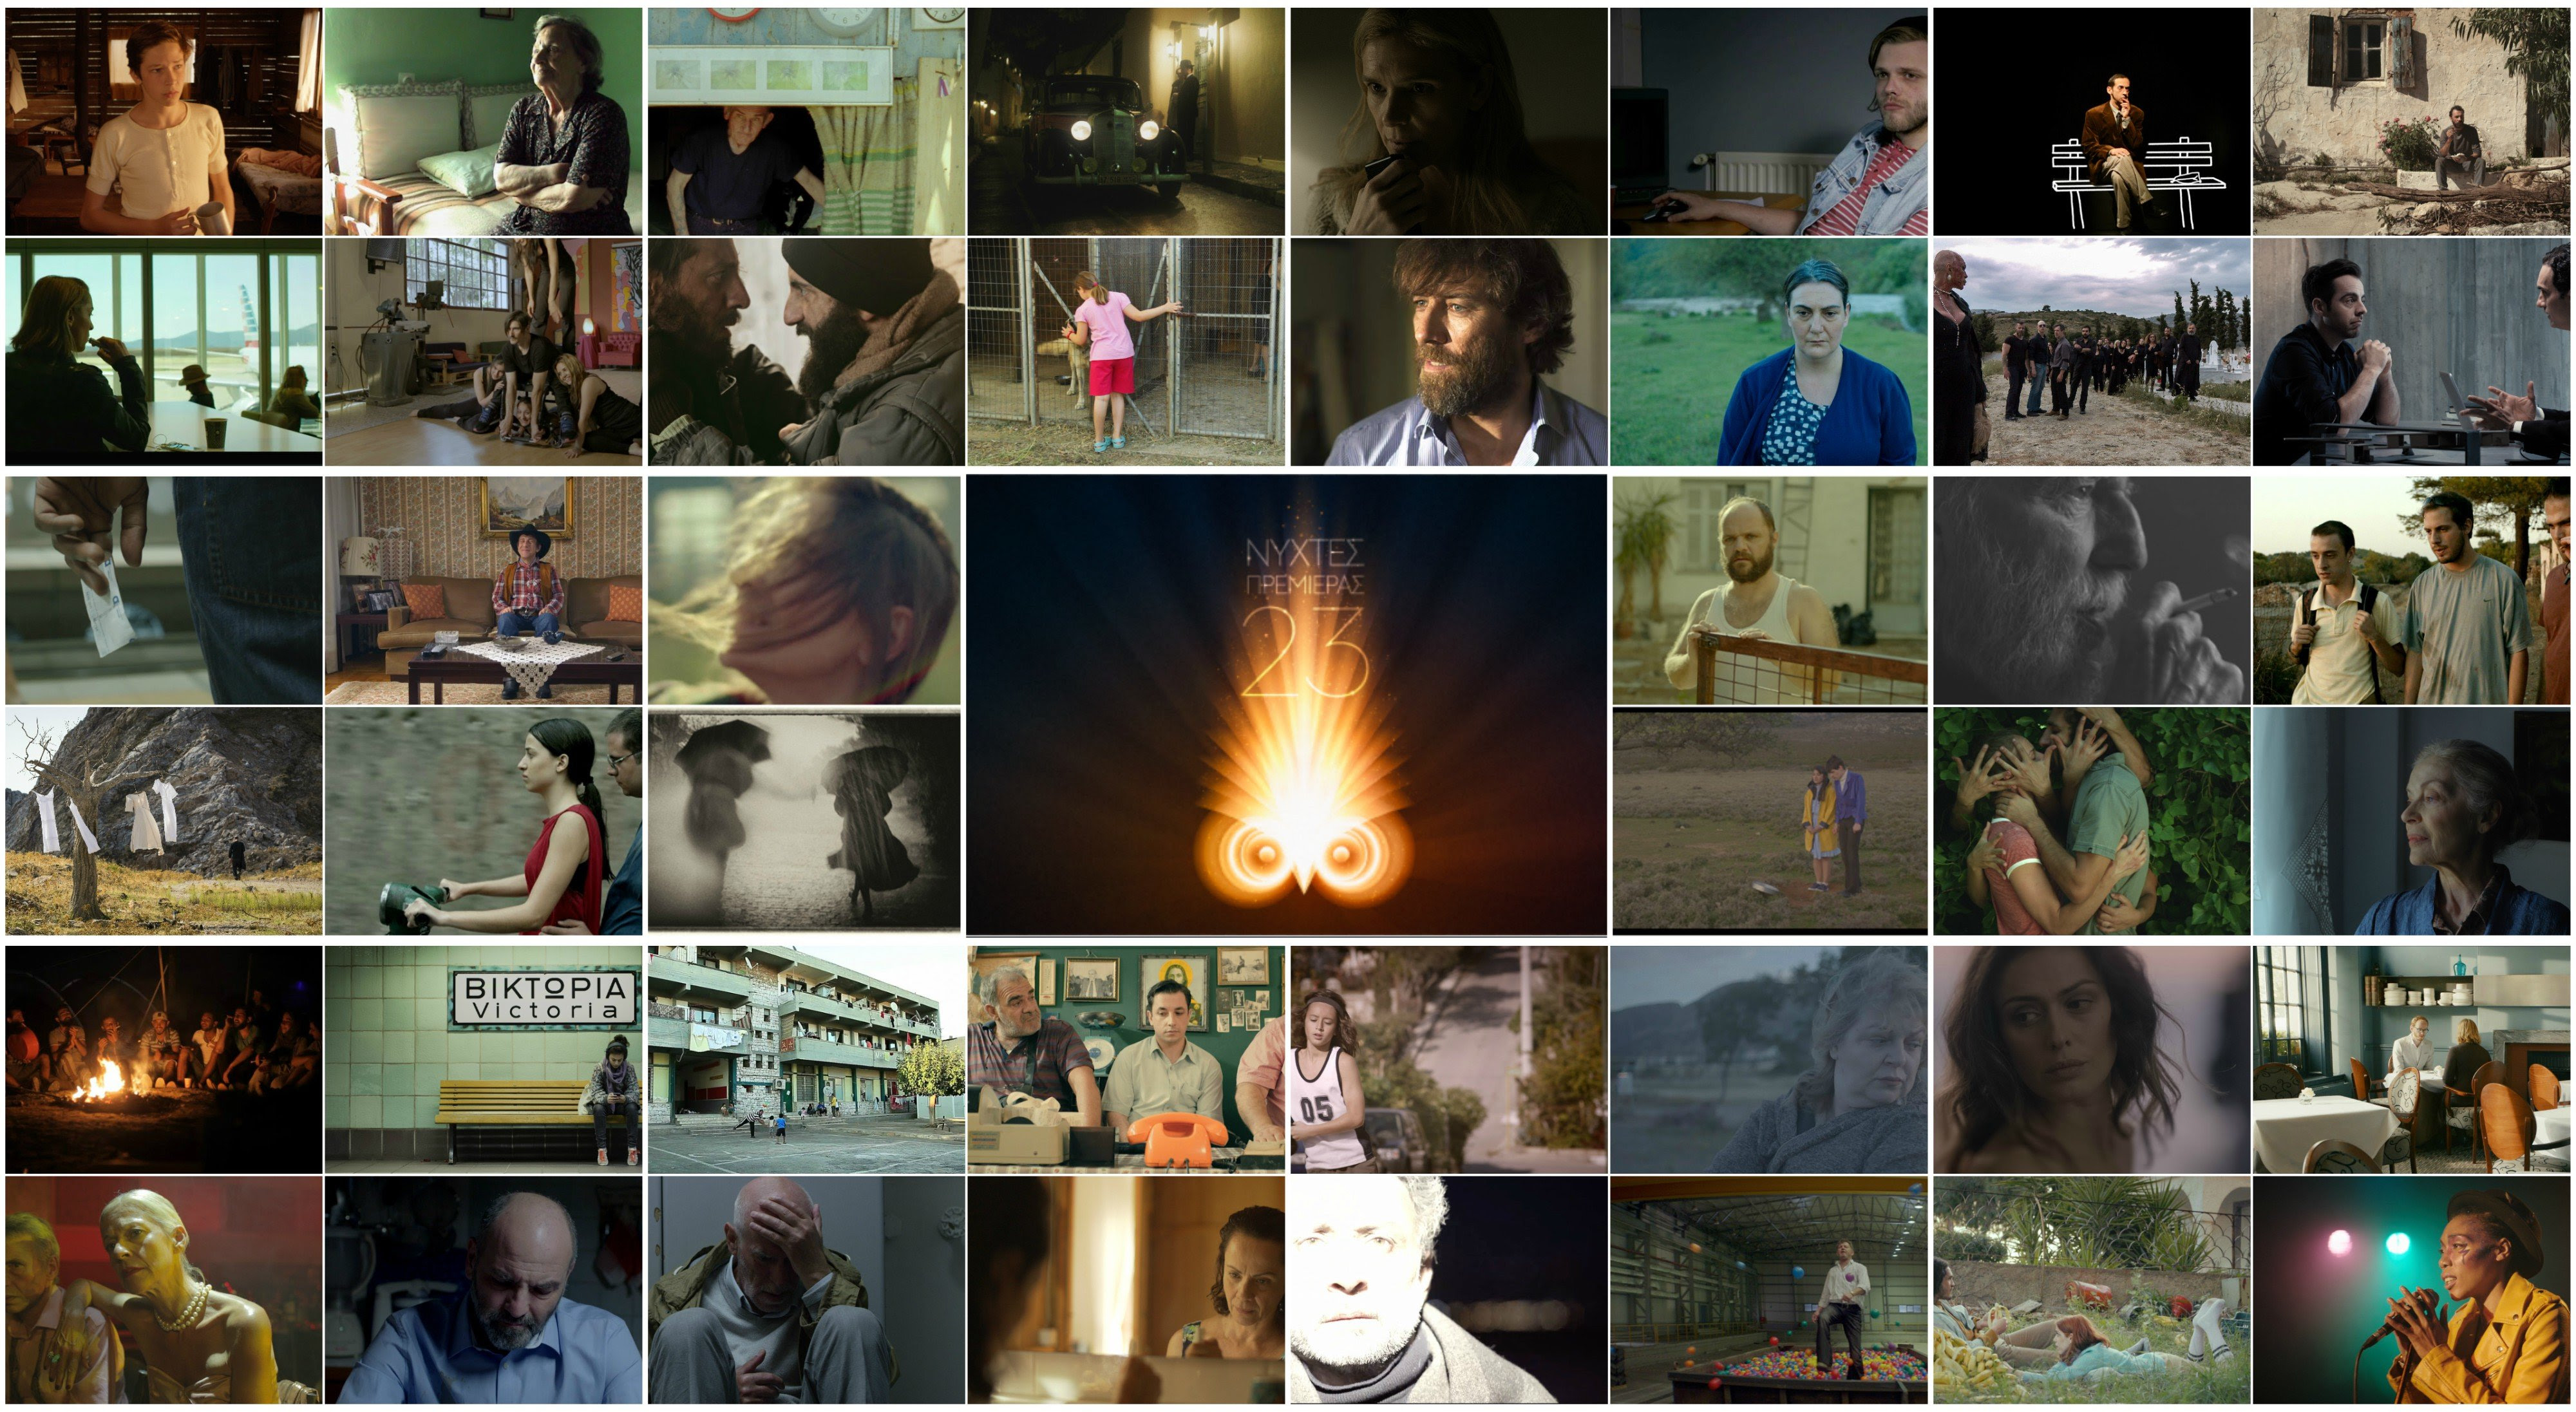 23ο Διεθνές Φεστιβάλ Κινηματογράφου της Αθήνας. Ελληνικό Σινεμά. Οι 44 ταινίες που θα διεκδικήσουν τα βραβεία της διοργάνωσης